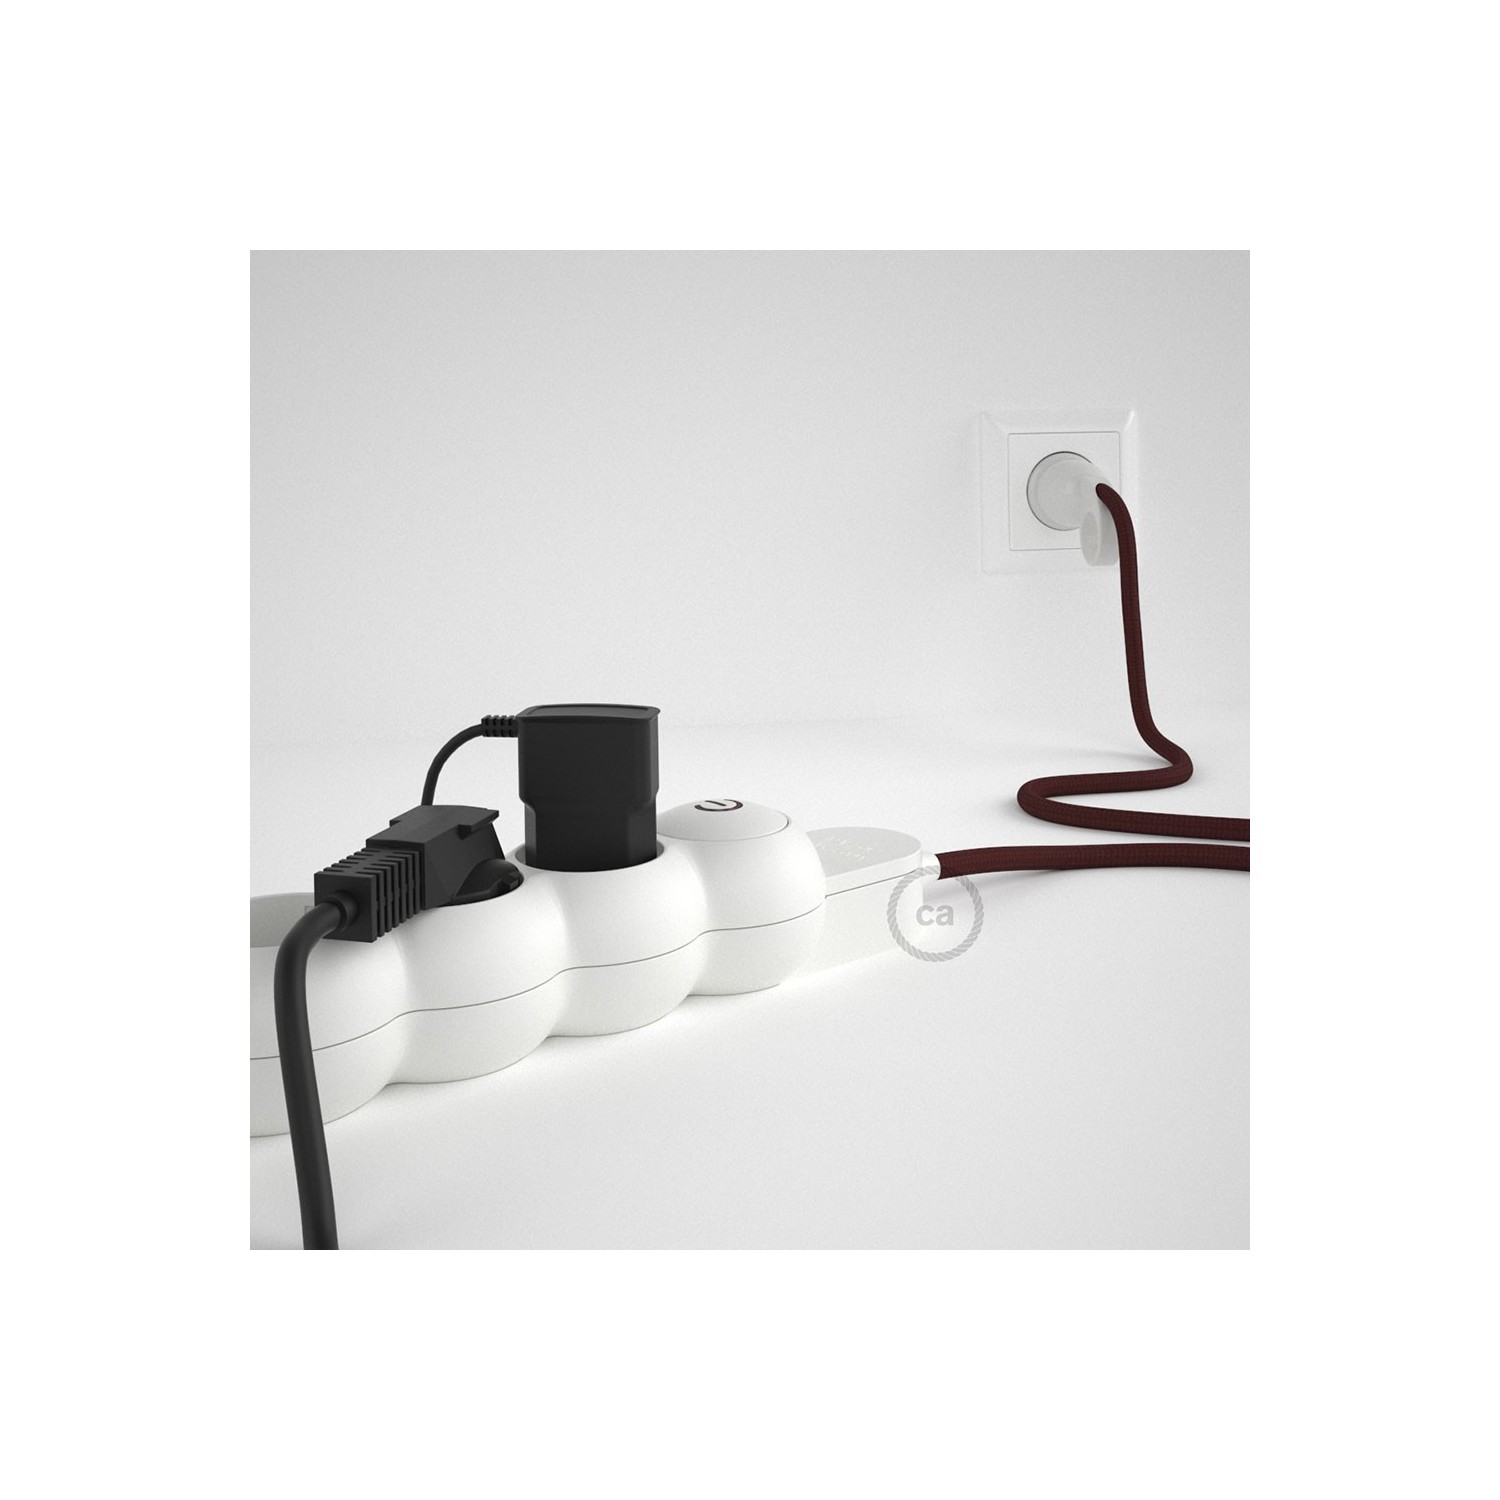 Bloc multiprise avec câble en tissu Effet Soie Bordeaux RM19 et fiche schuko avec anneau confort